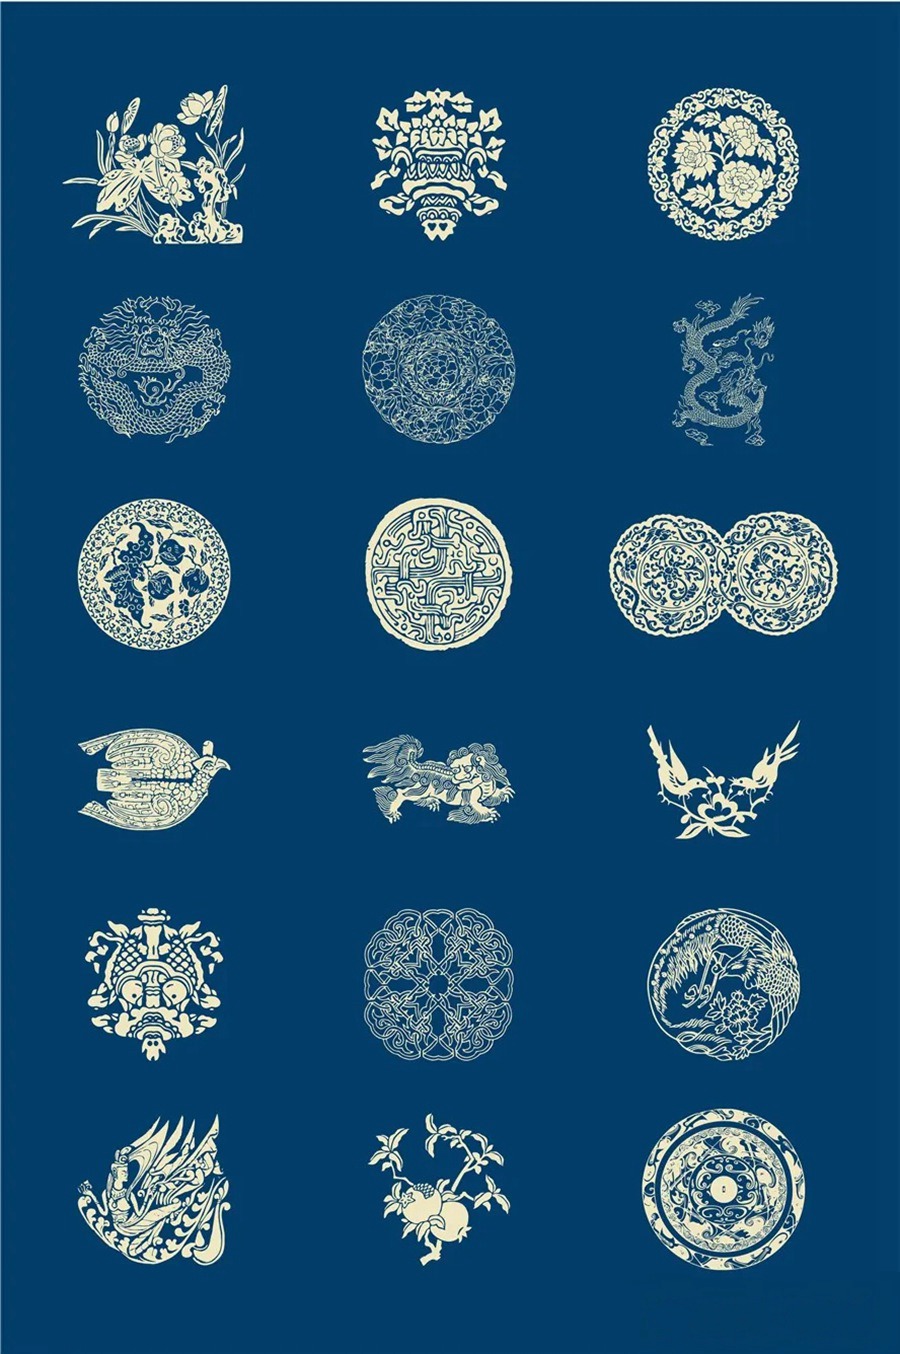 中国风传统古典青花瓷图案花纹图形纹样AI矢量模板花纹设计素材 图片素材 第10张